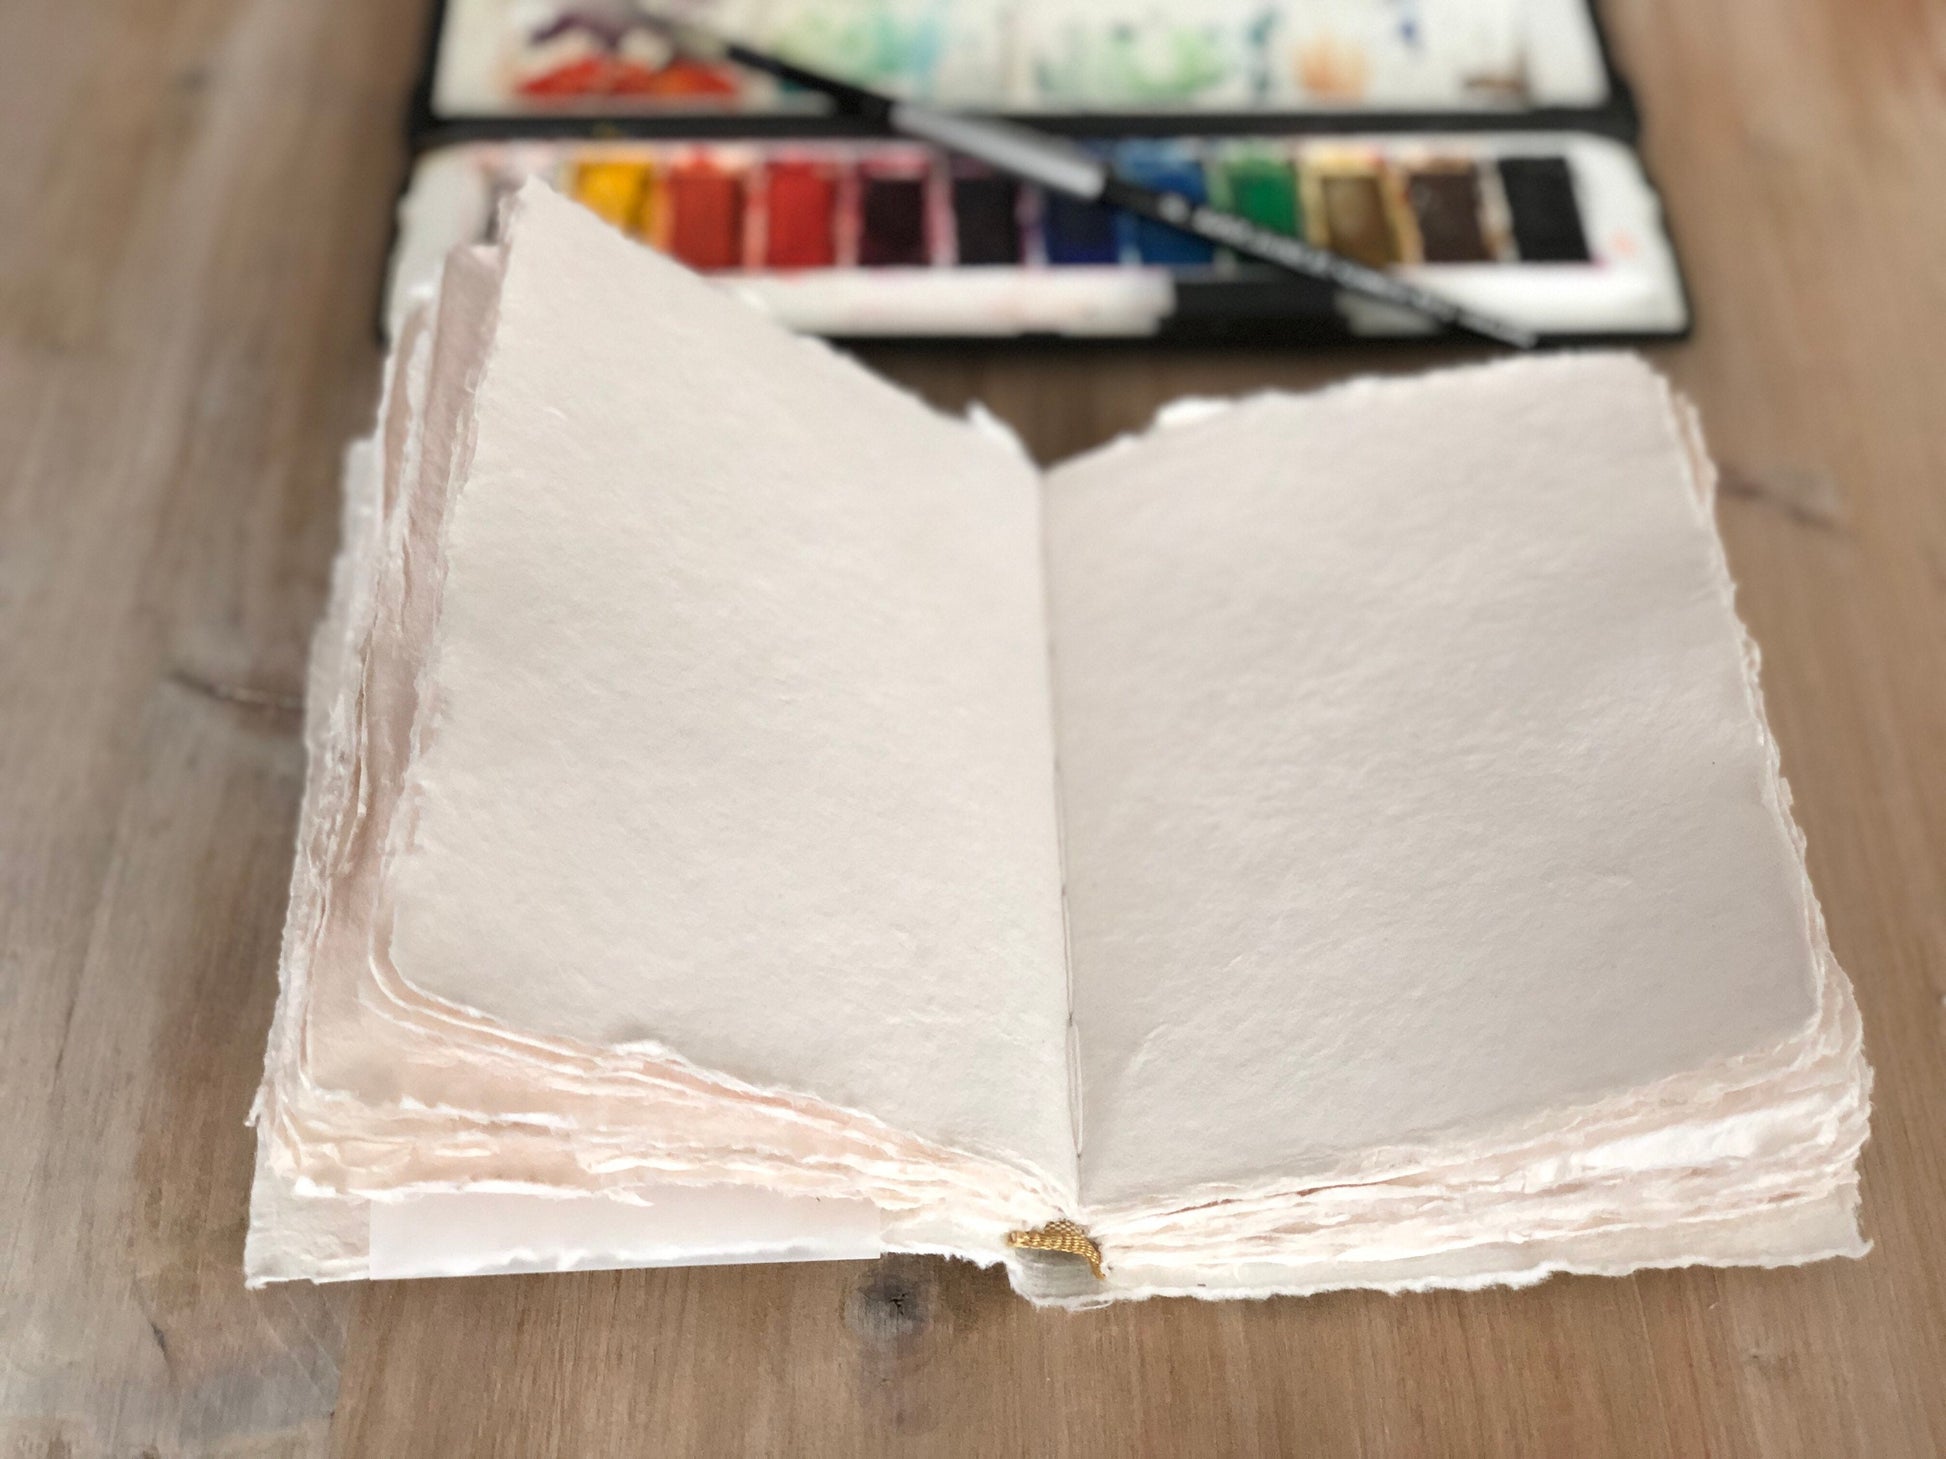 Sketchbook A5 100% Cotton Handmade Paper